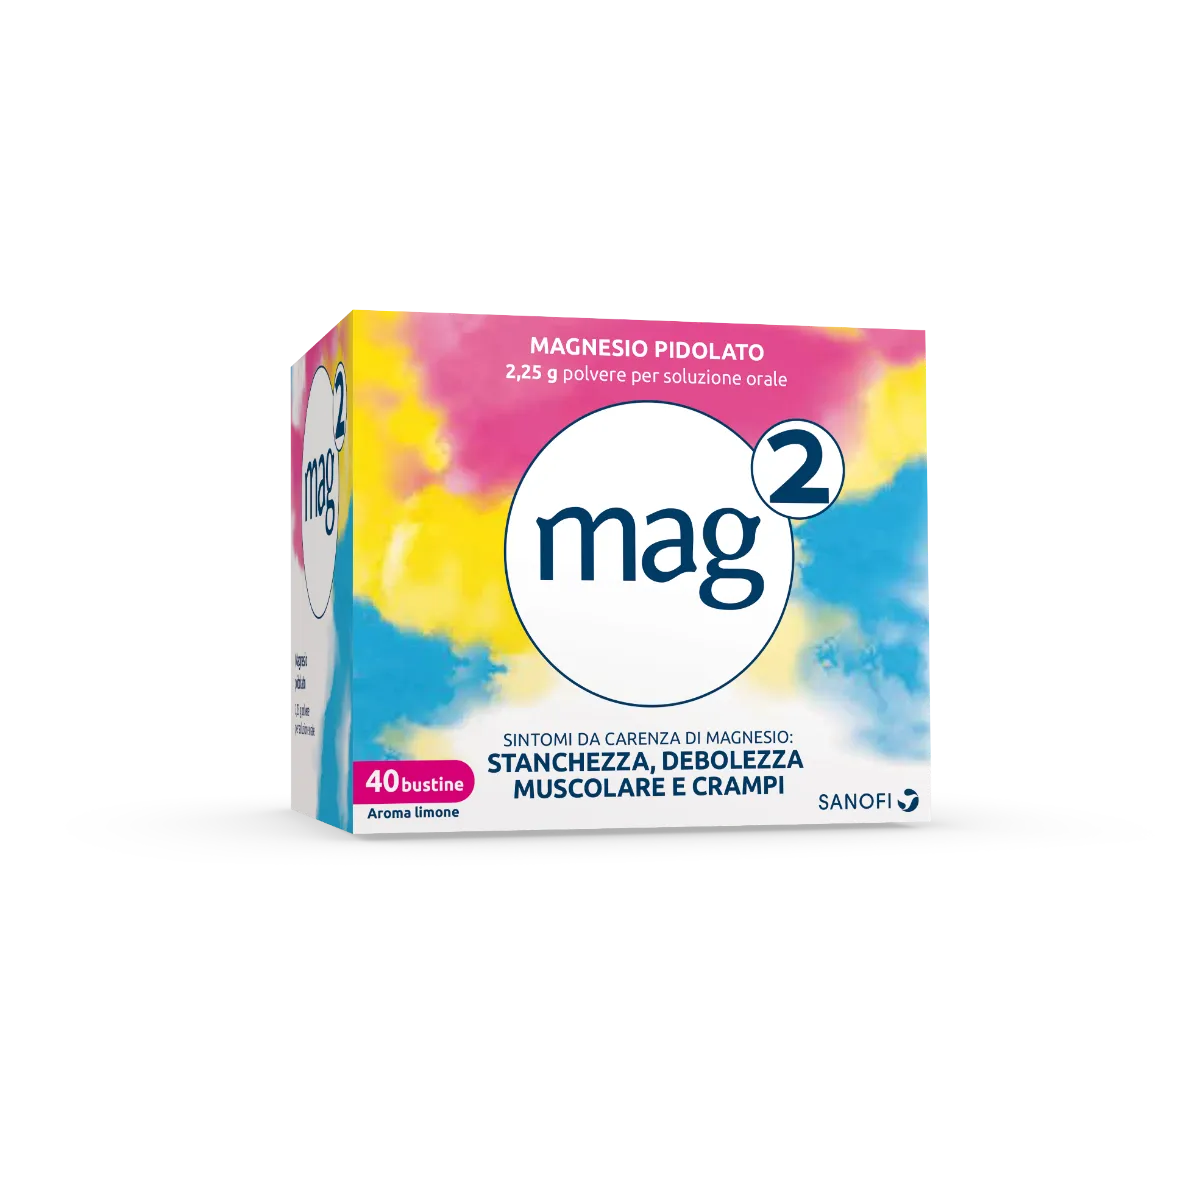 Mag 2 2,25 g Soluzione Orale 40 Bustine Carenze di Magnesio